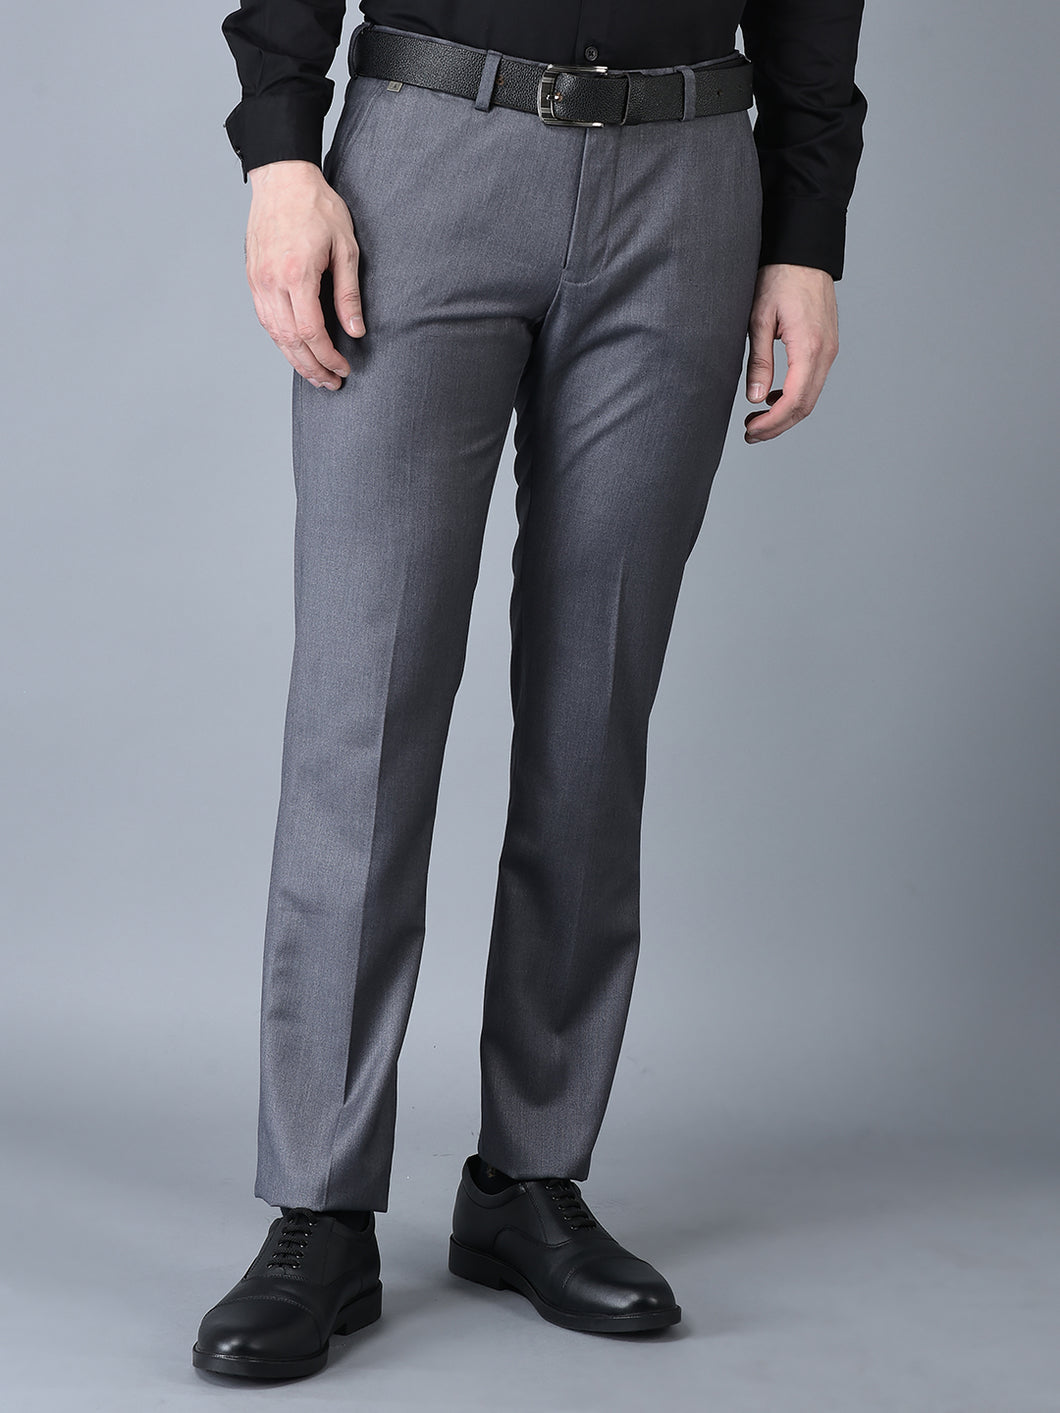 CANOE MEN Formal Trouser  GREY Color